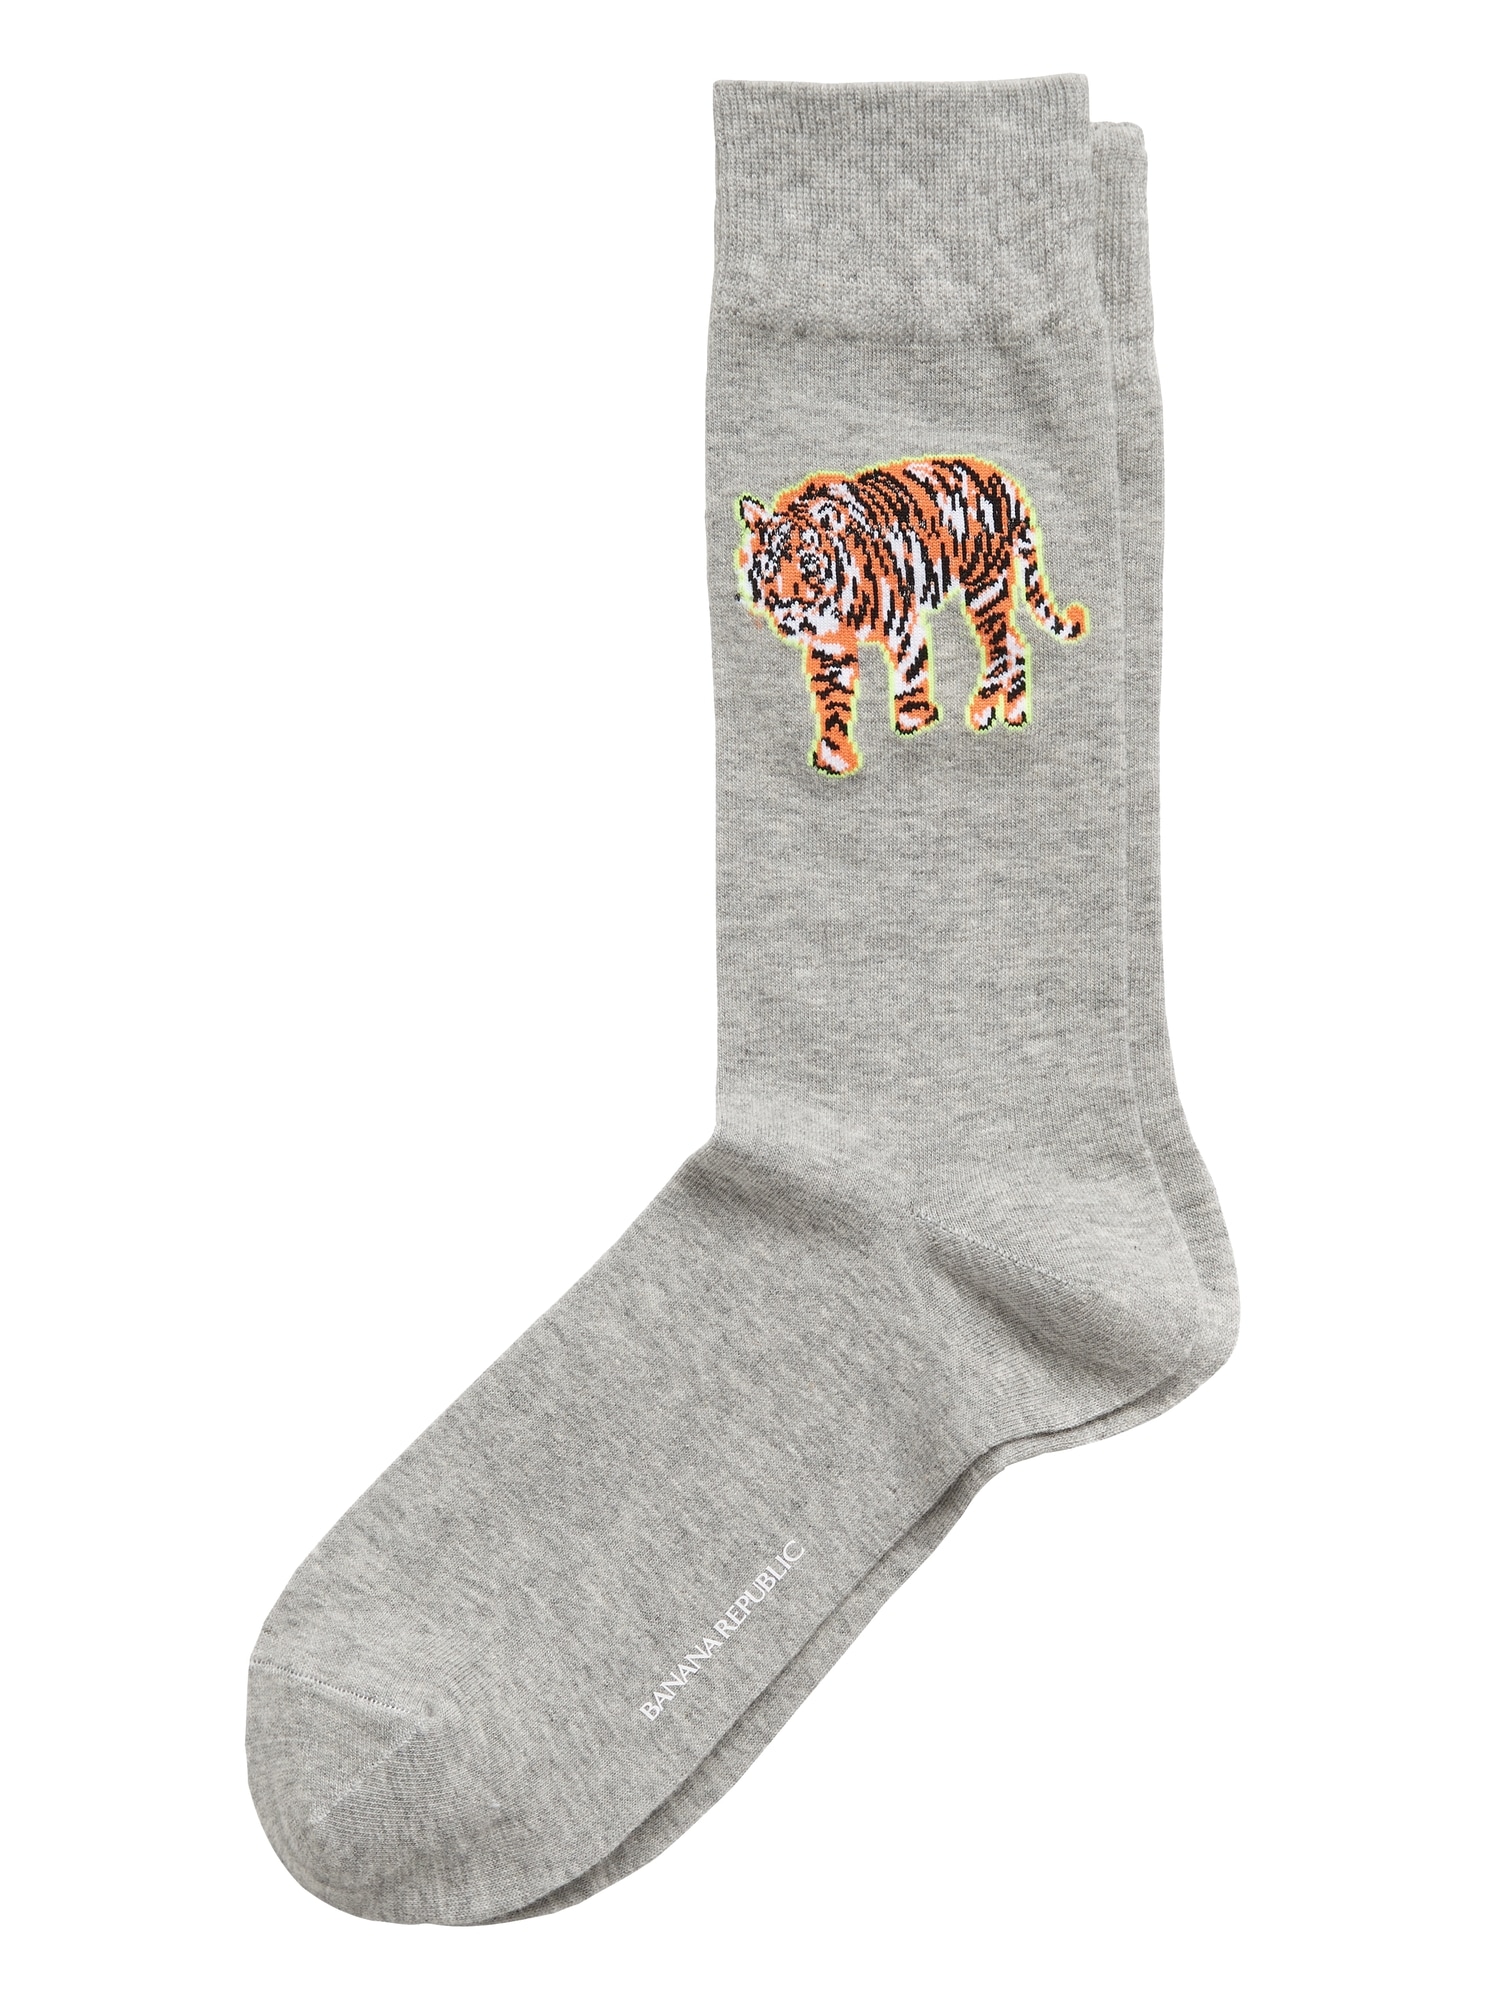 Tiger Emblem Sock